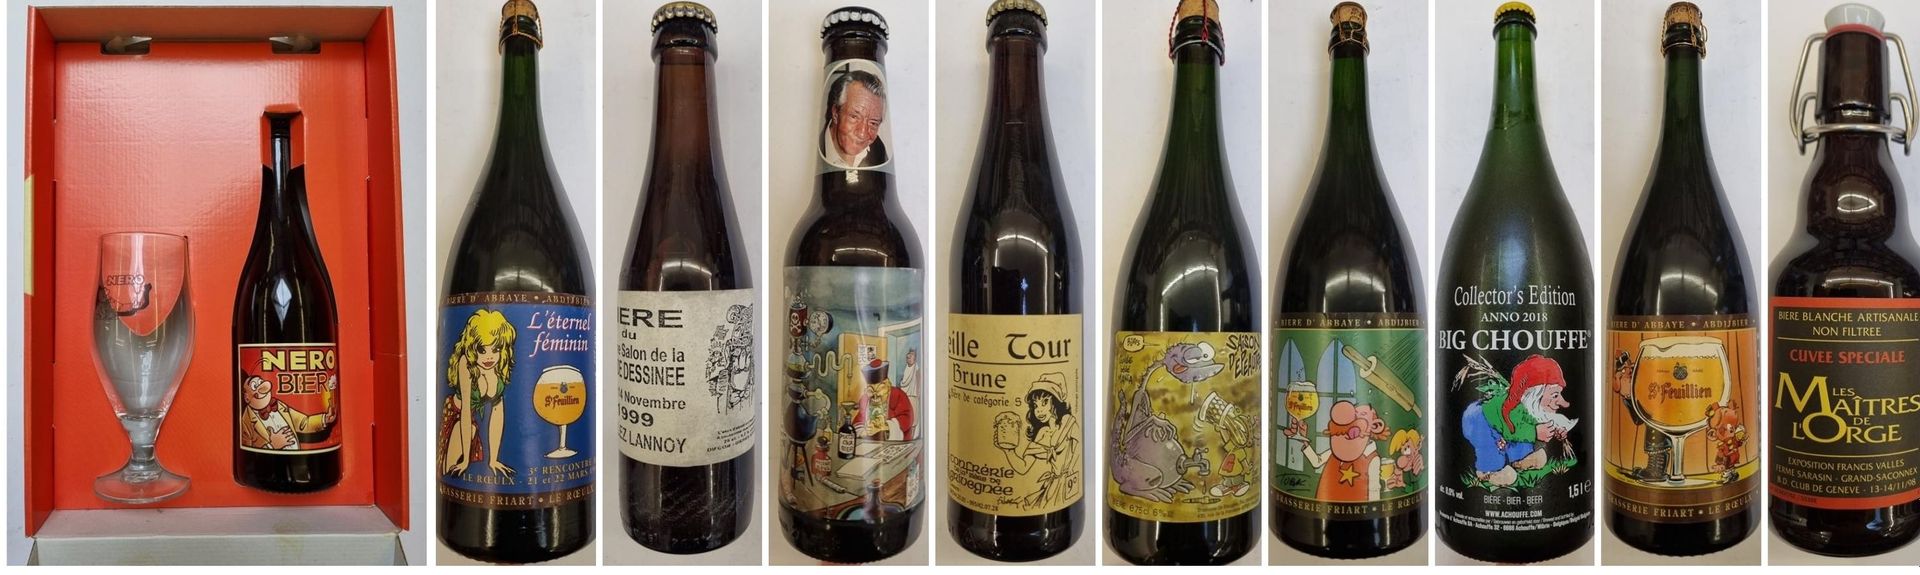 Null 一套20个由不同设计师装饰的啤酒瓶。 1985年至2012年期间生产的。 TBE+